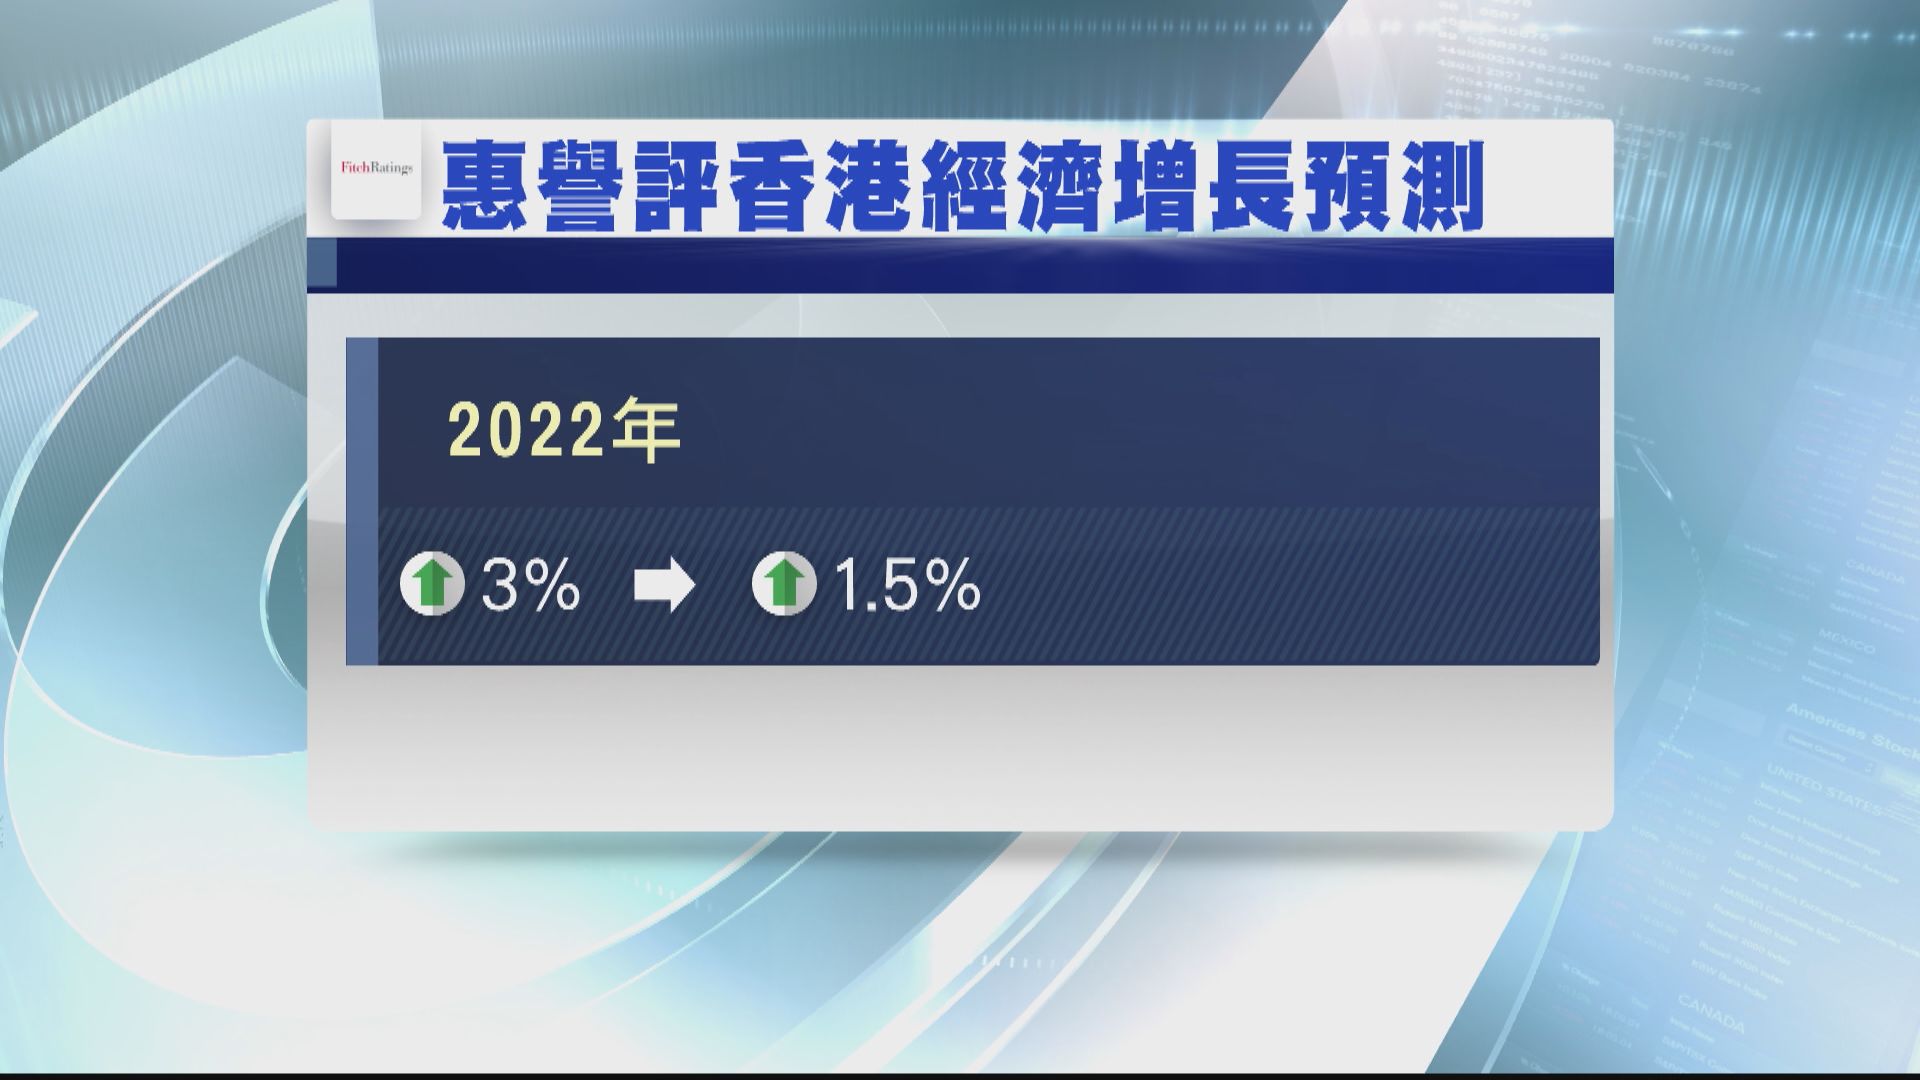 惠譽降本港經濟增長預測至1.5%